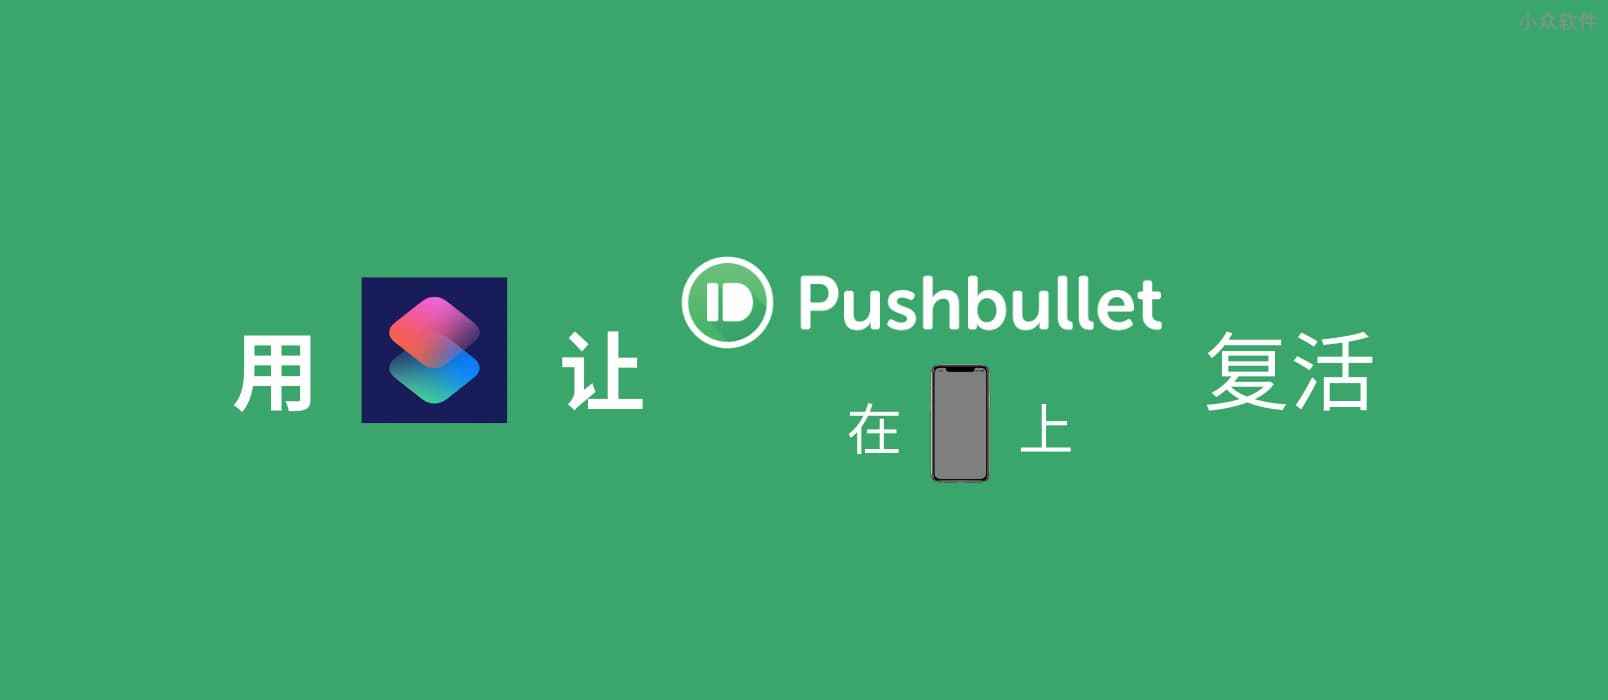 跨平台传输内容，用快捷指令让 Pushbullet 在 iPhone 上复活 1